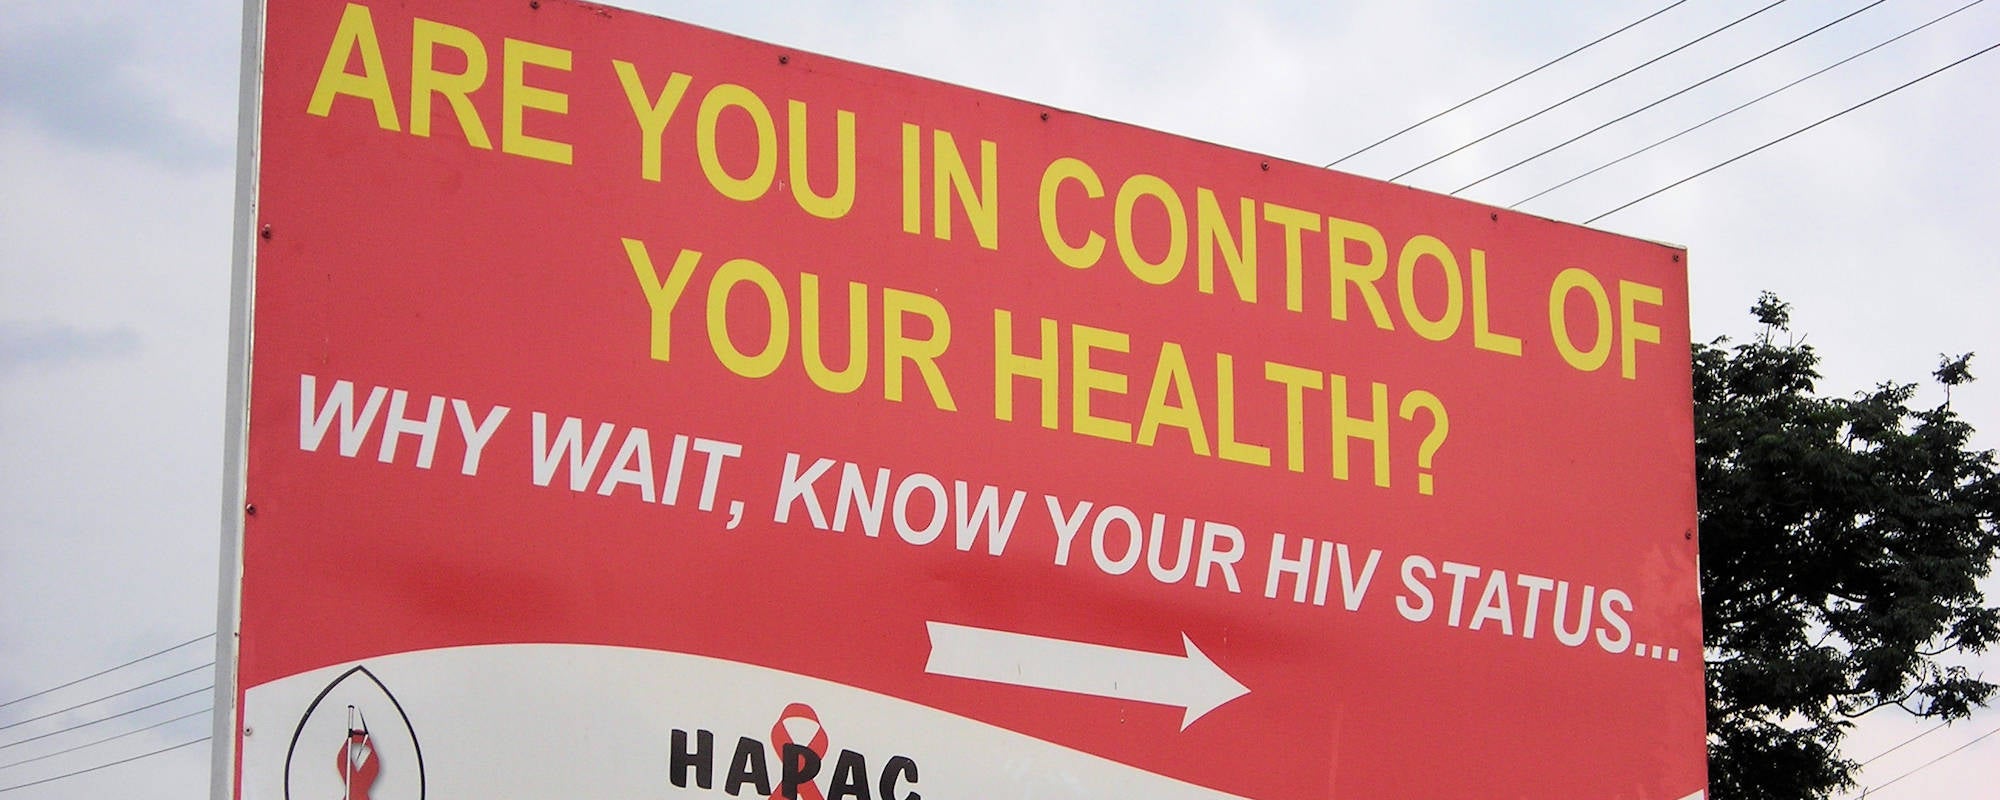 AIDS information banner